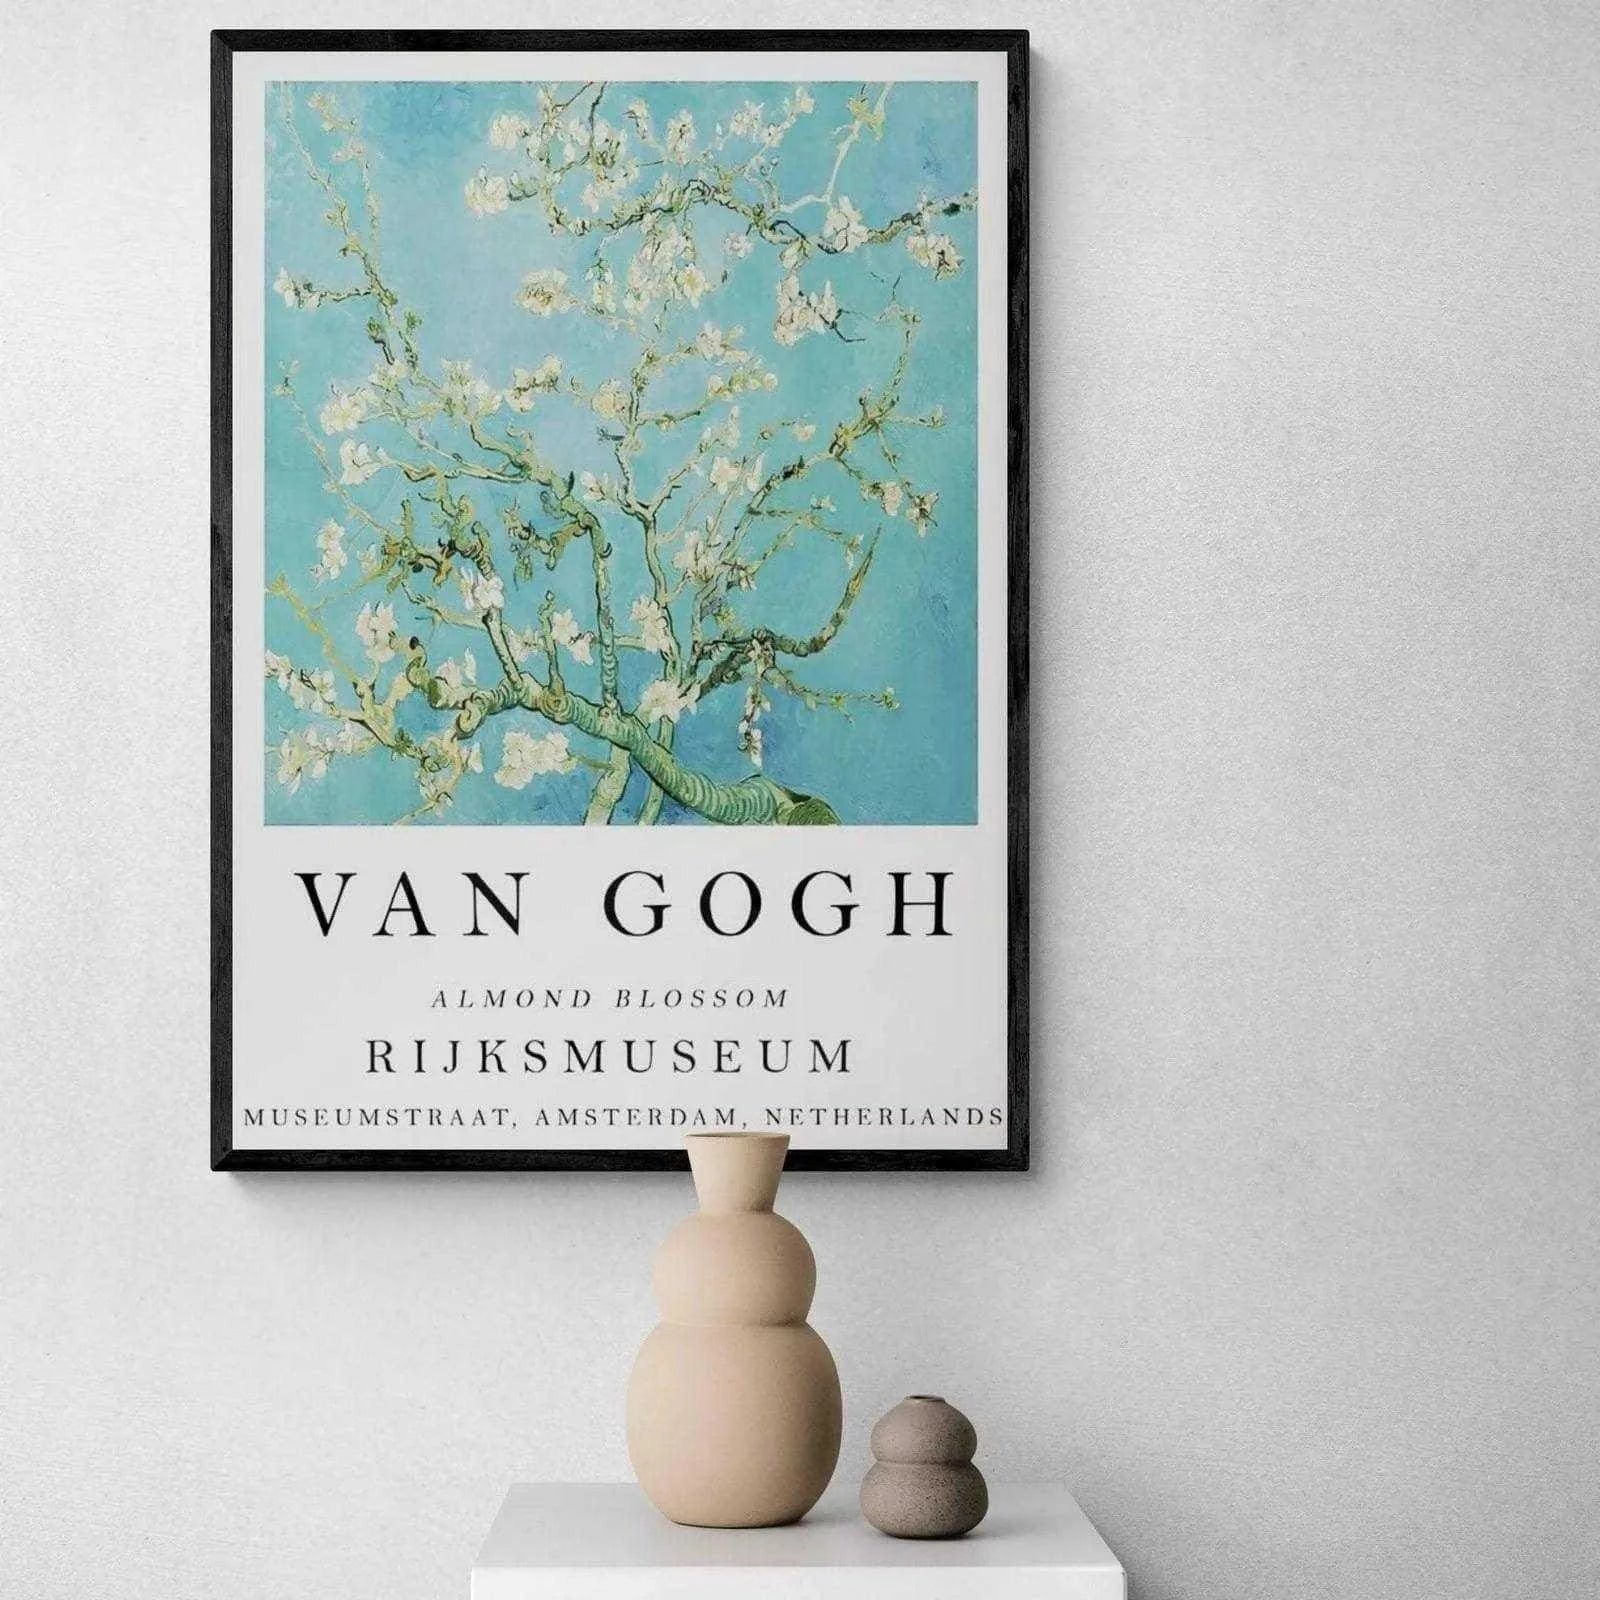 Tableau Van Gogh Collection Affiche Vintage - Montableaudeco